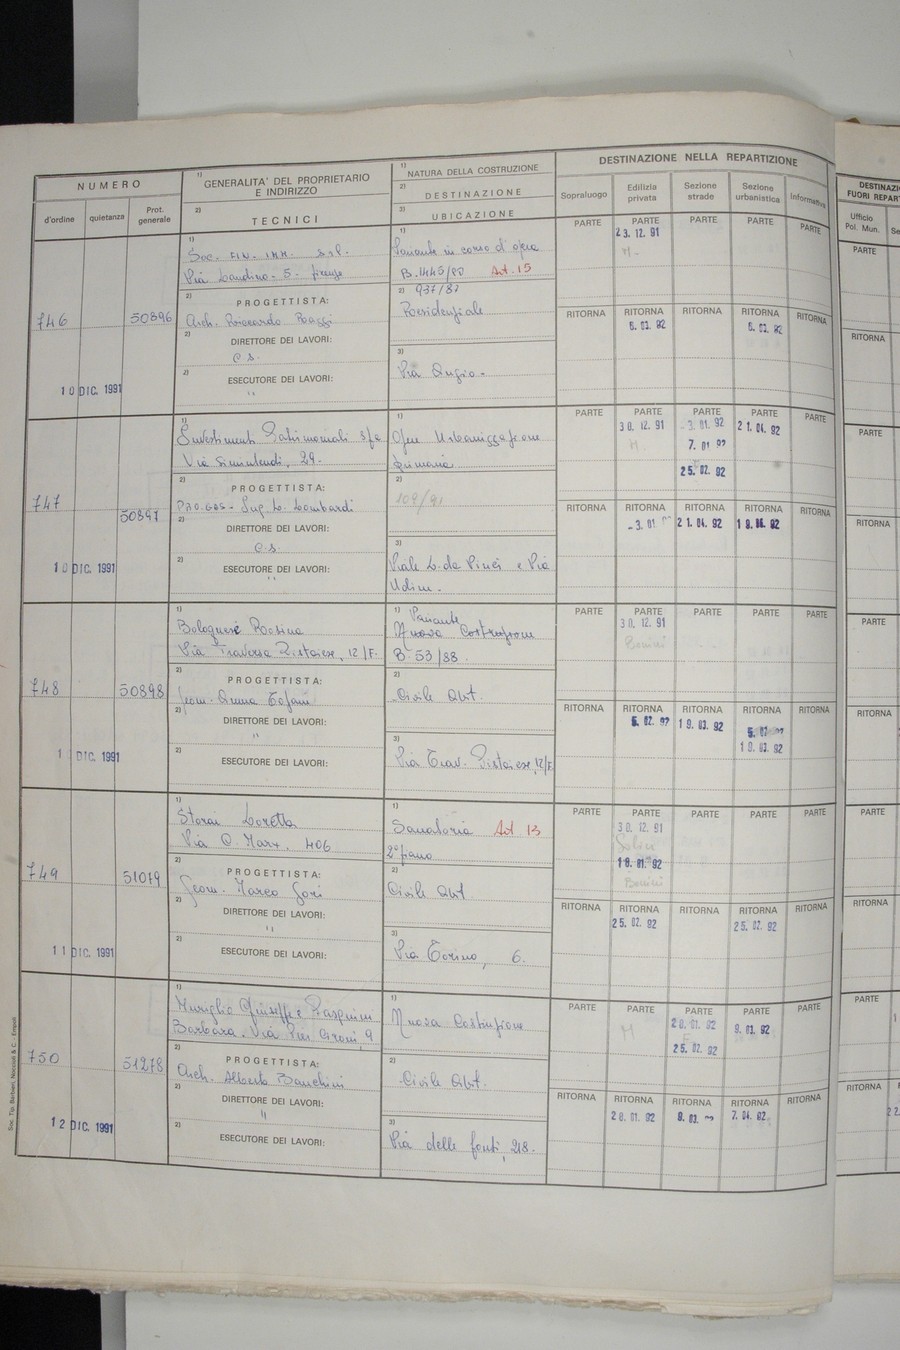 Foto del lato sinistro del registro con i dati della pratica 747/1991